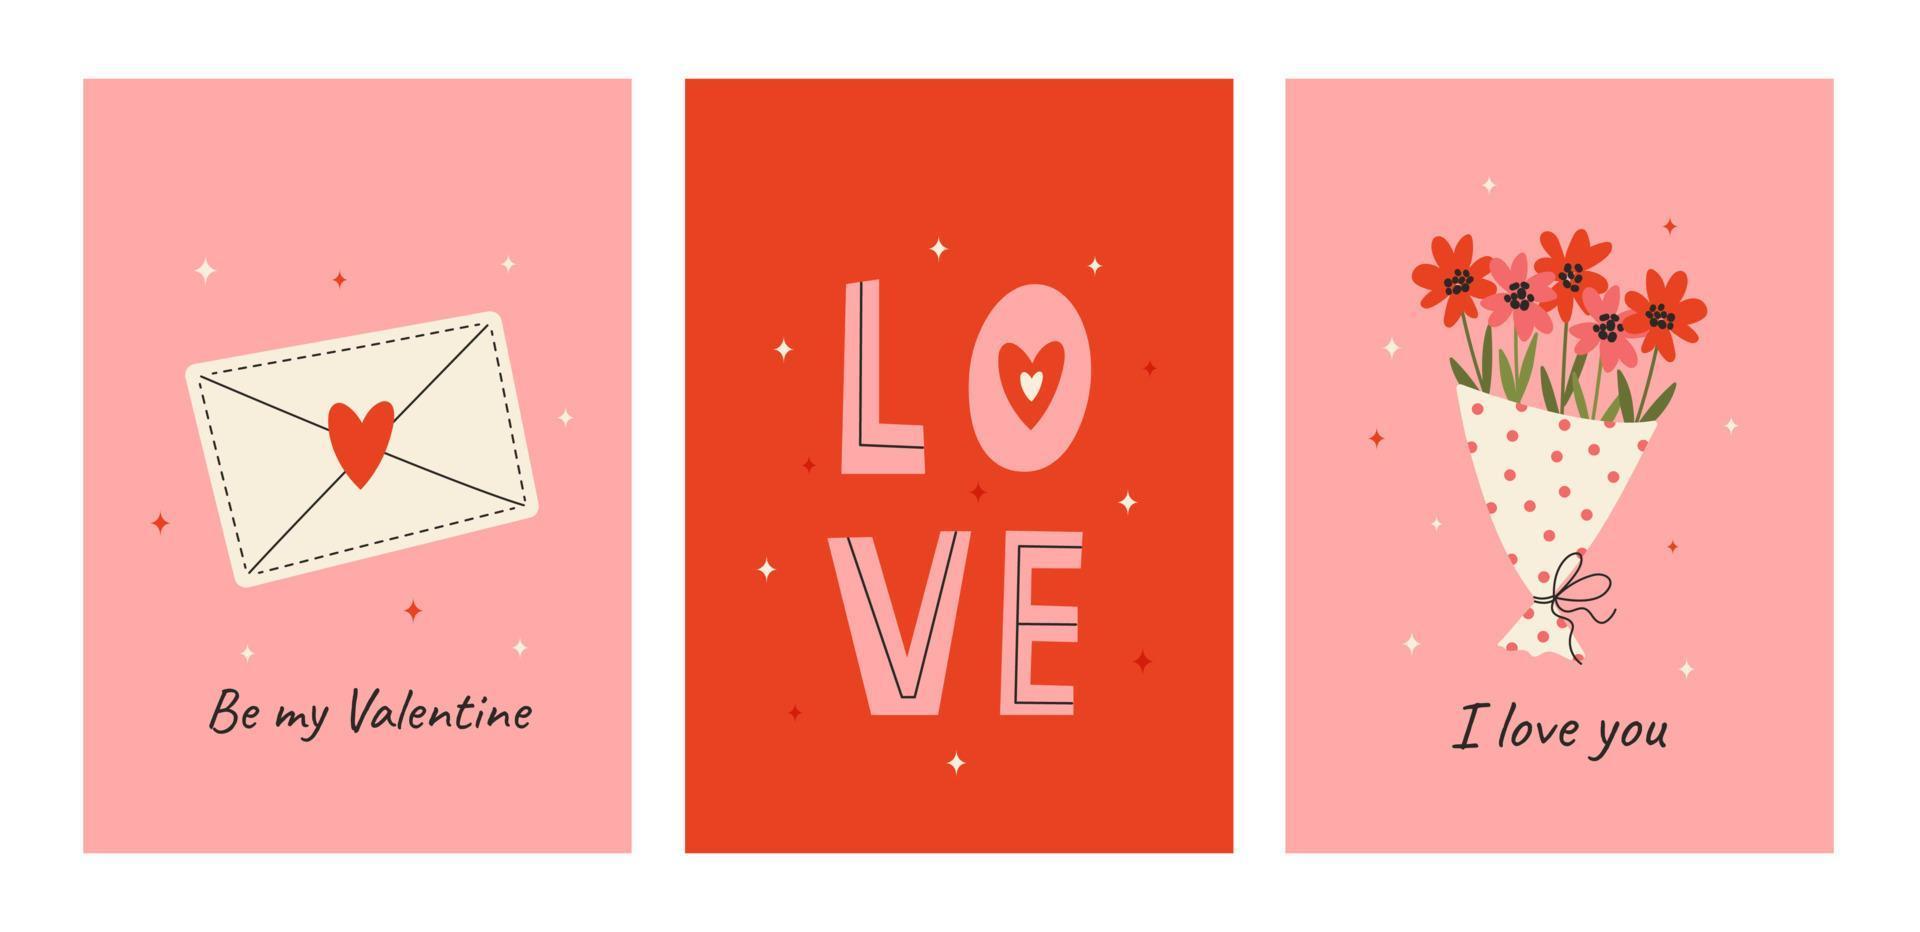 reeks van schattig groet kaarten voor Valentijnsdag dag. vector illustraties met feestelijk decoratief elementen, hart, envelop, boeket van bloemen en belettering. roze en rood ansichtkaarten.